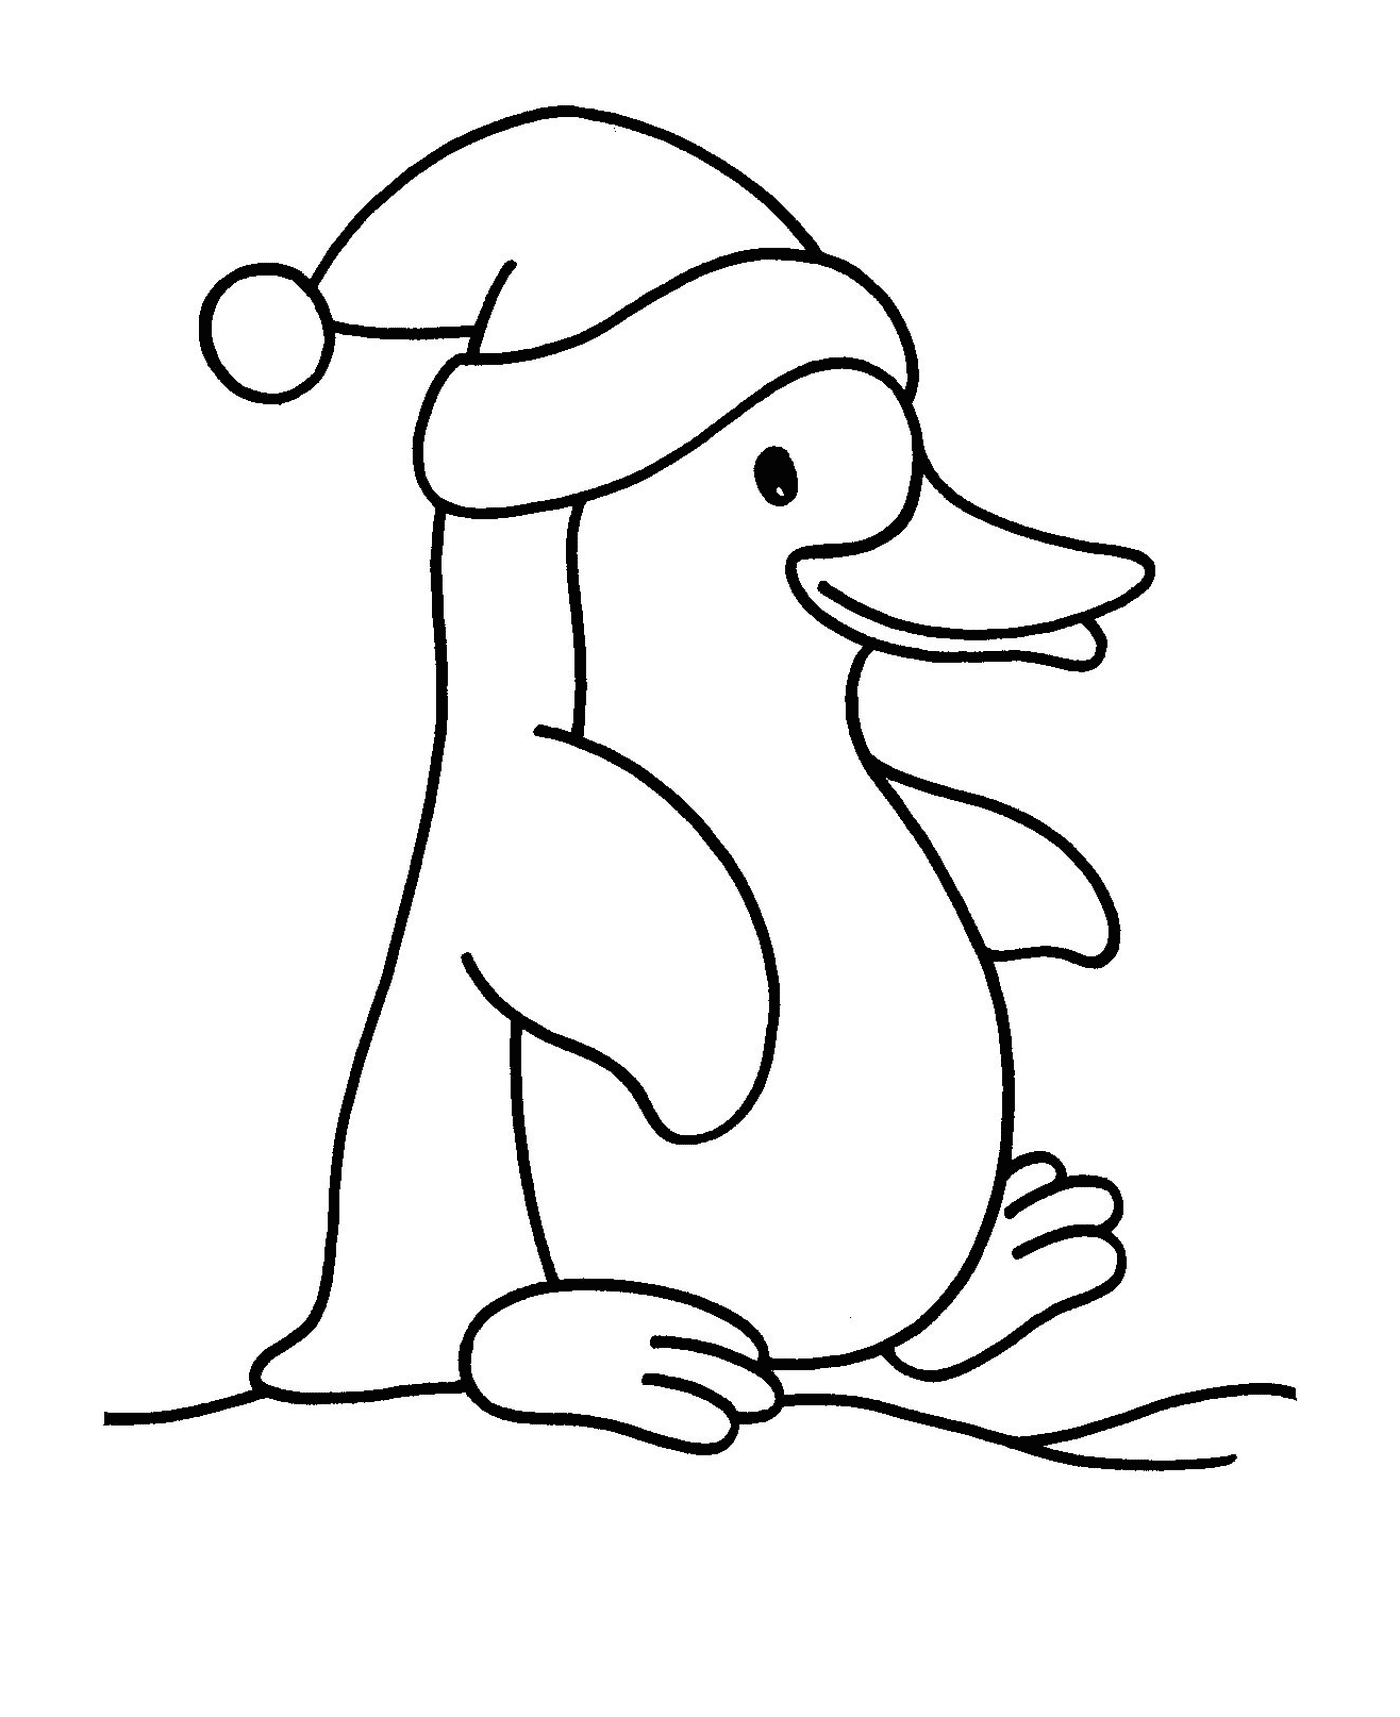  Pinguino di Natale affascinante 